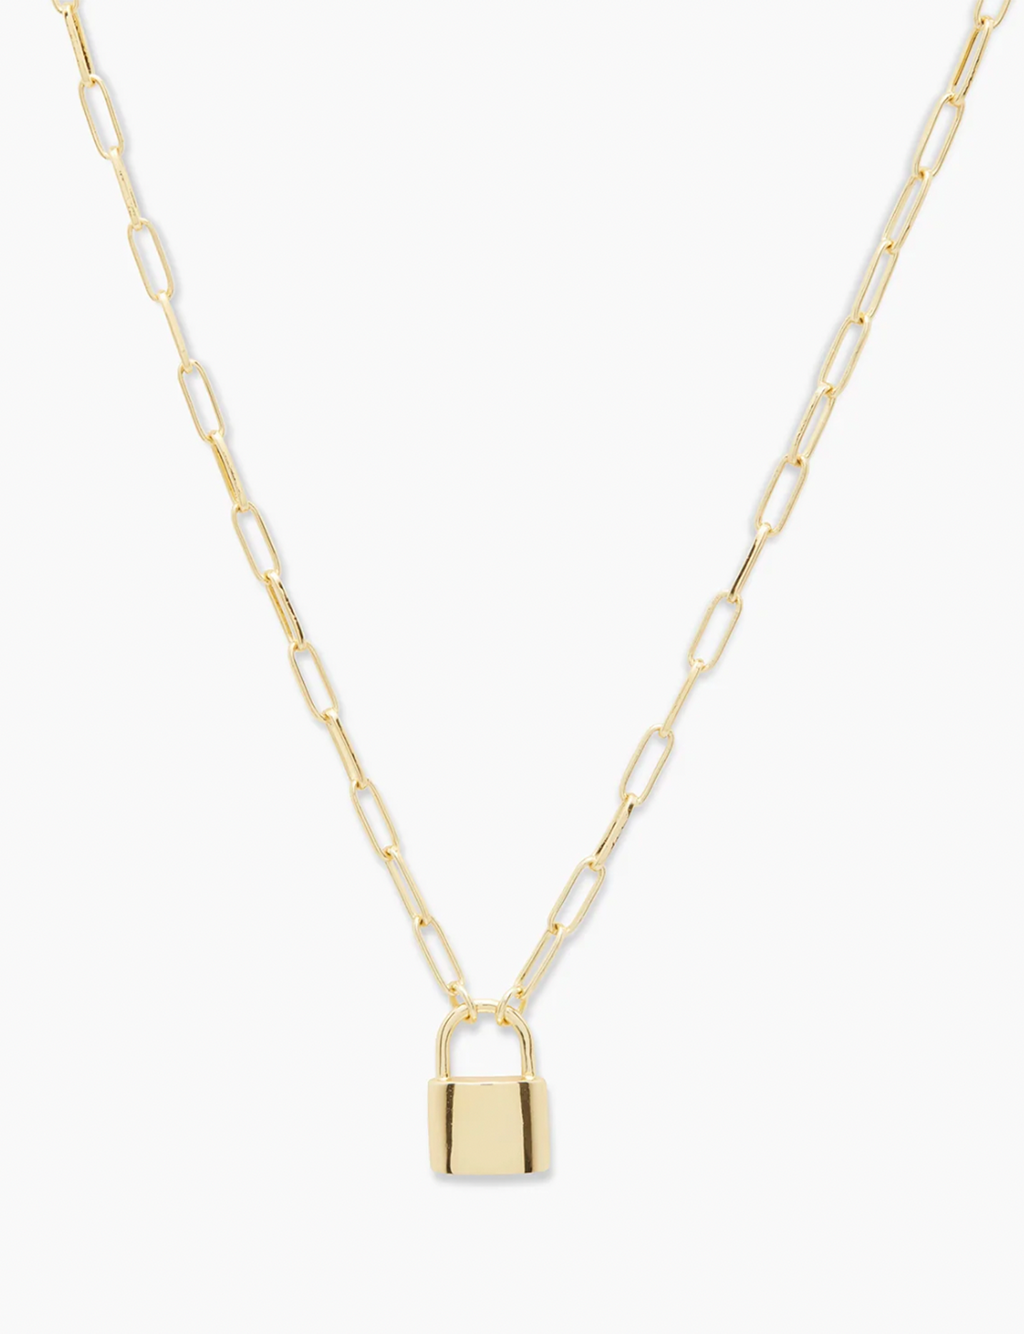 Kara Padlock Charm Necklace, Gold